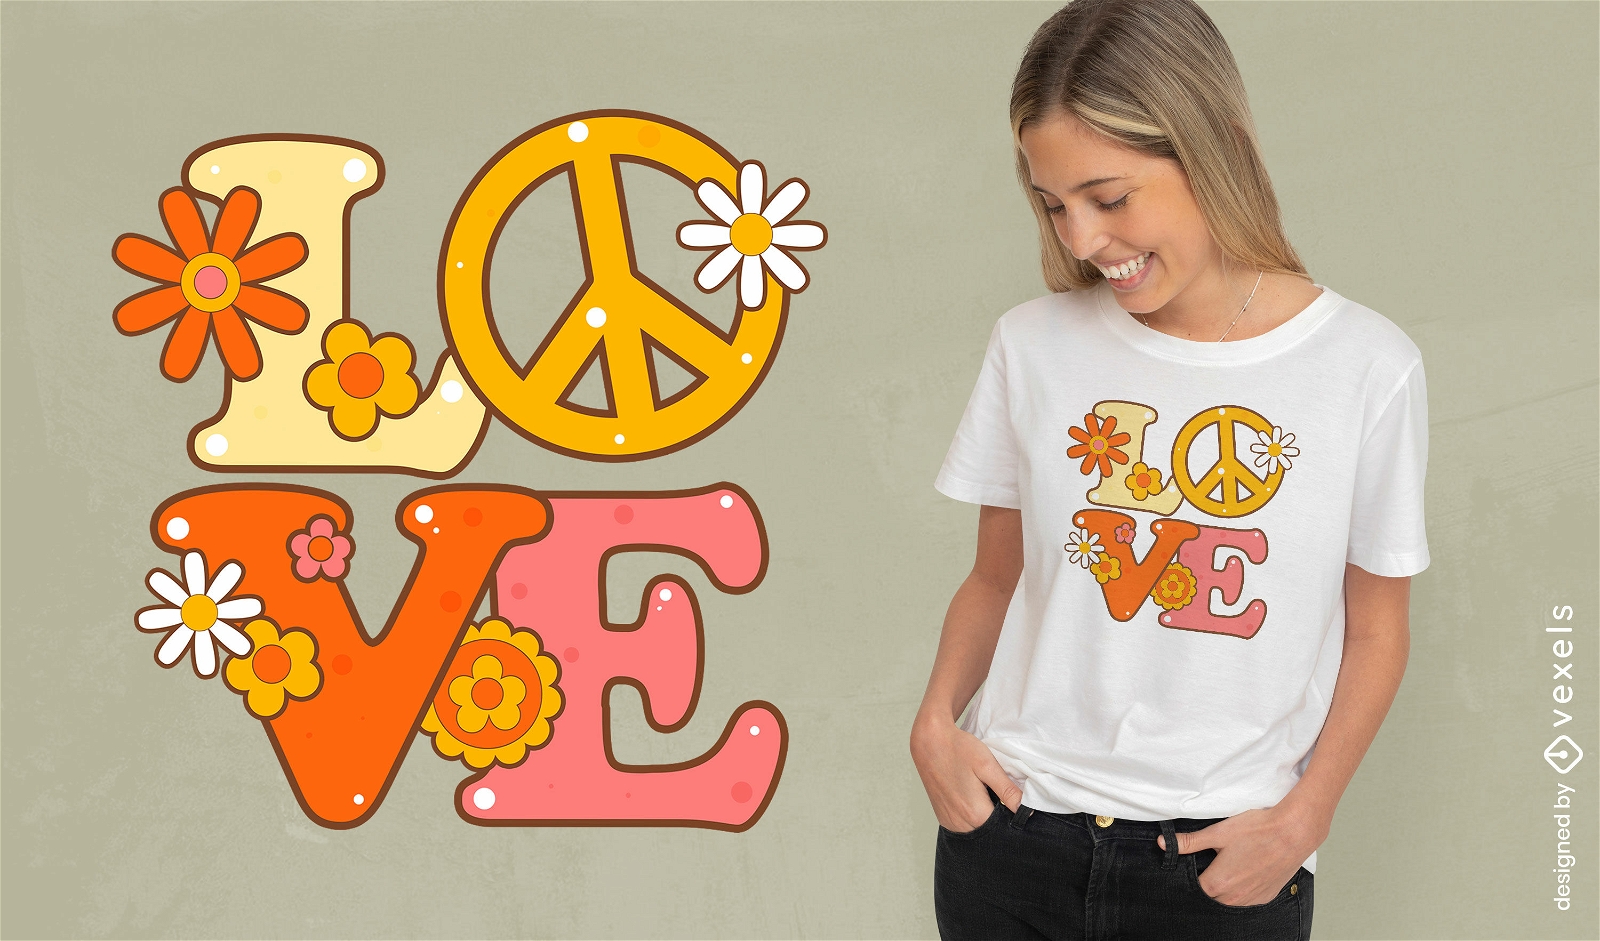 Diseño de camiseta con gráfico de amor y paz.